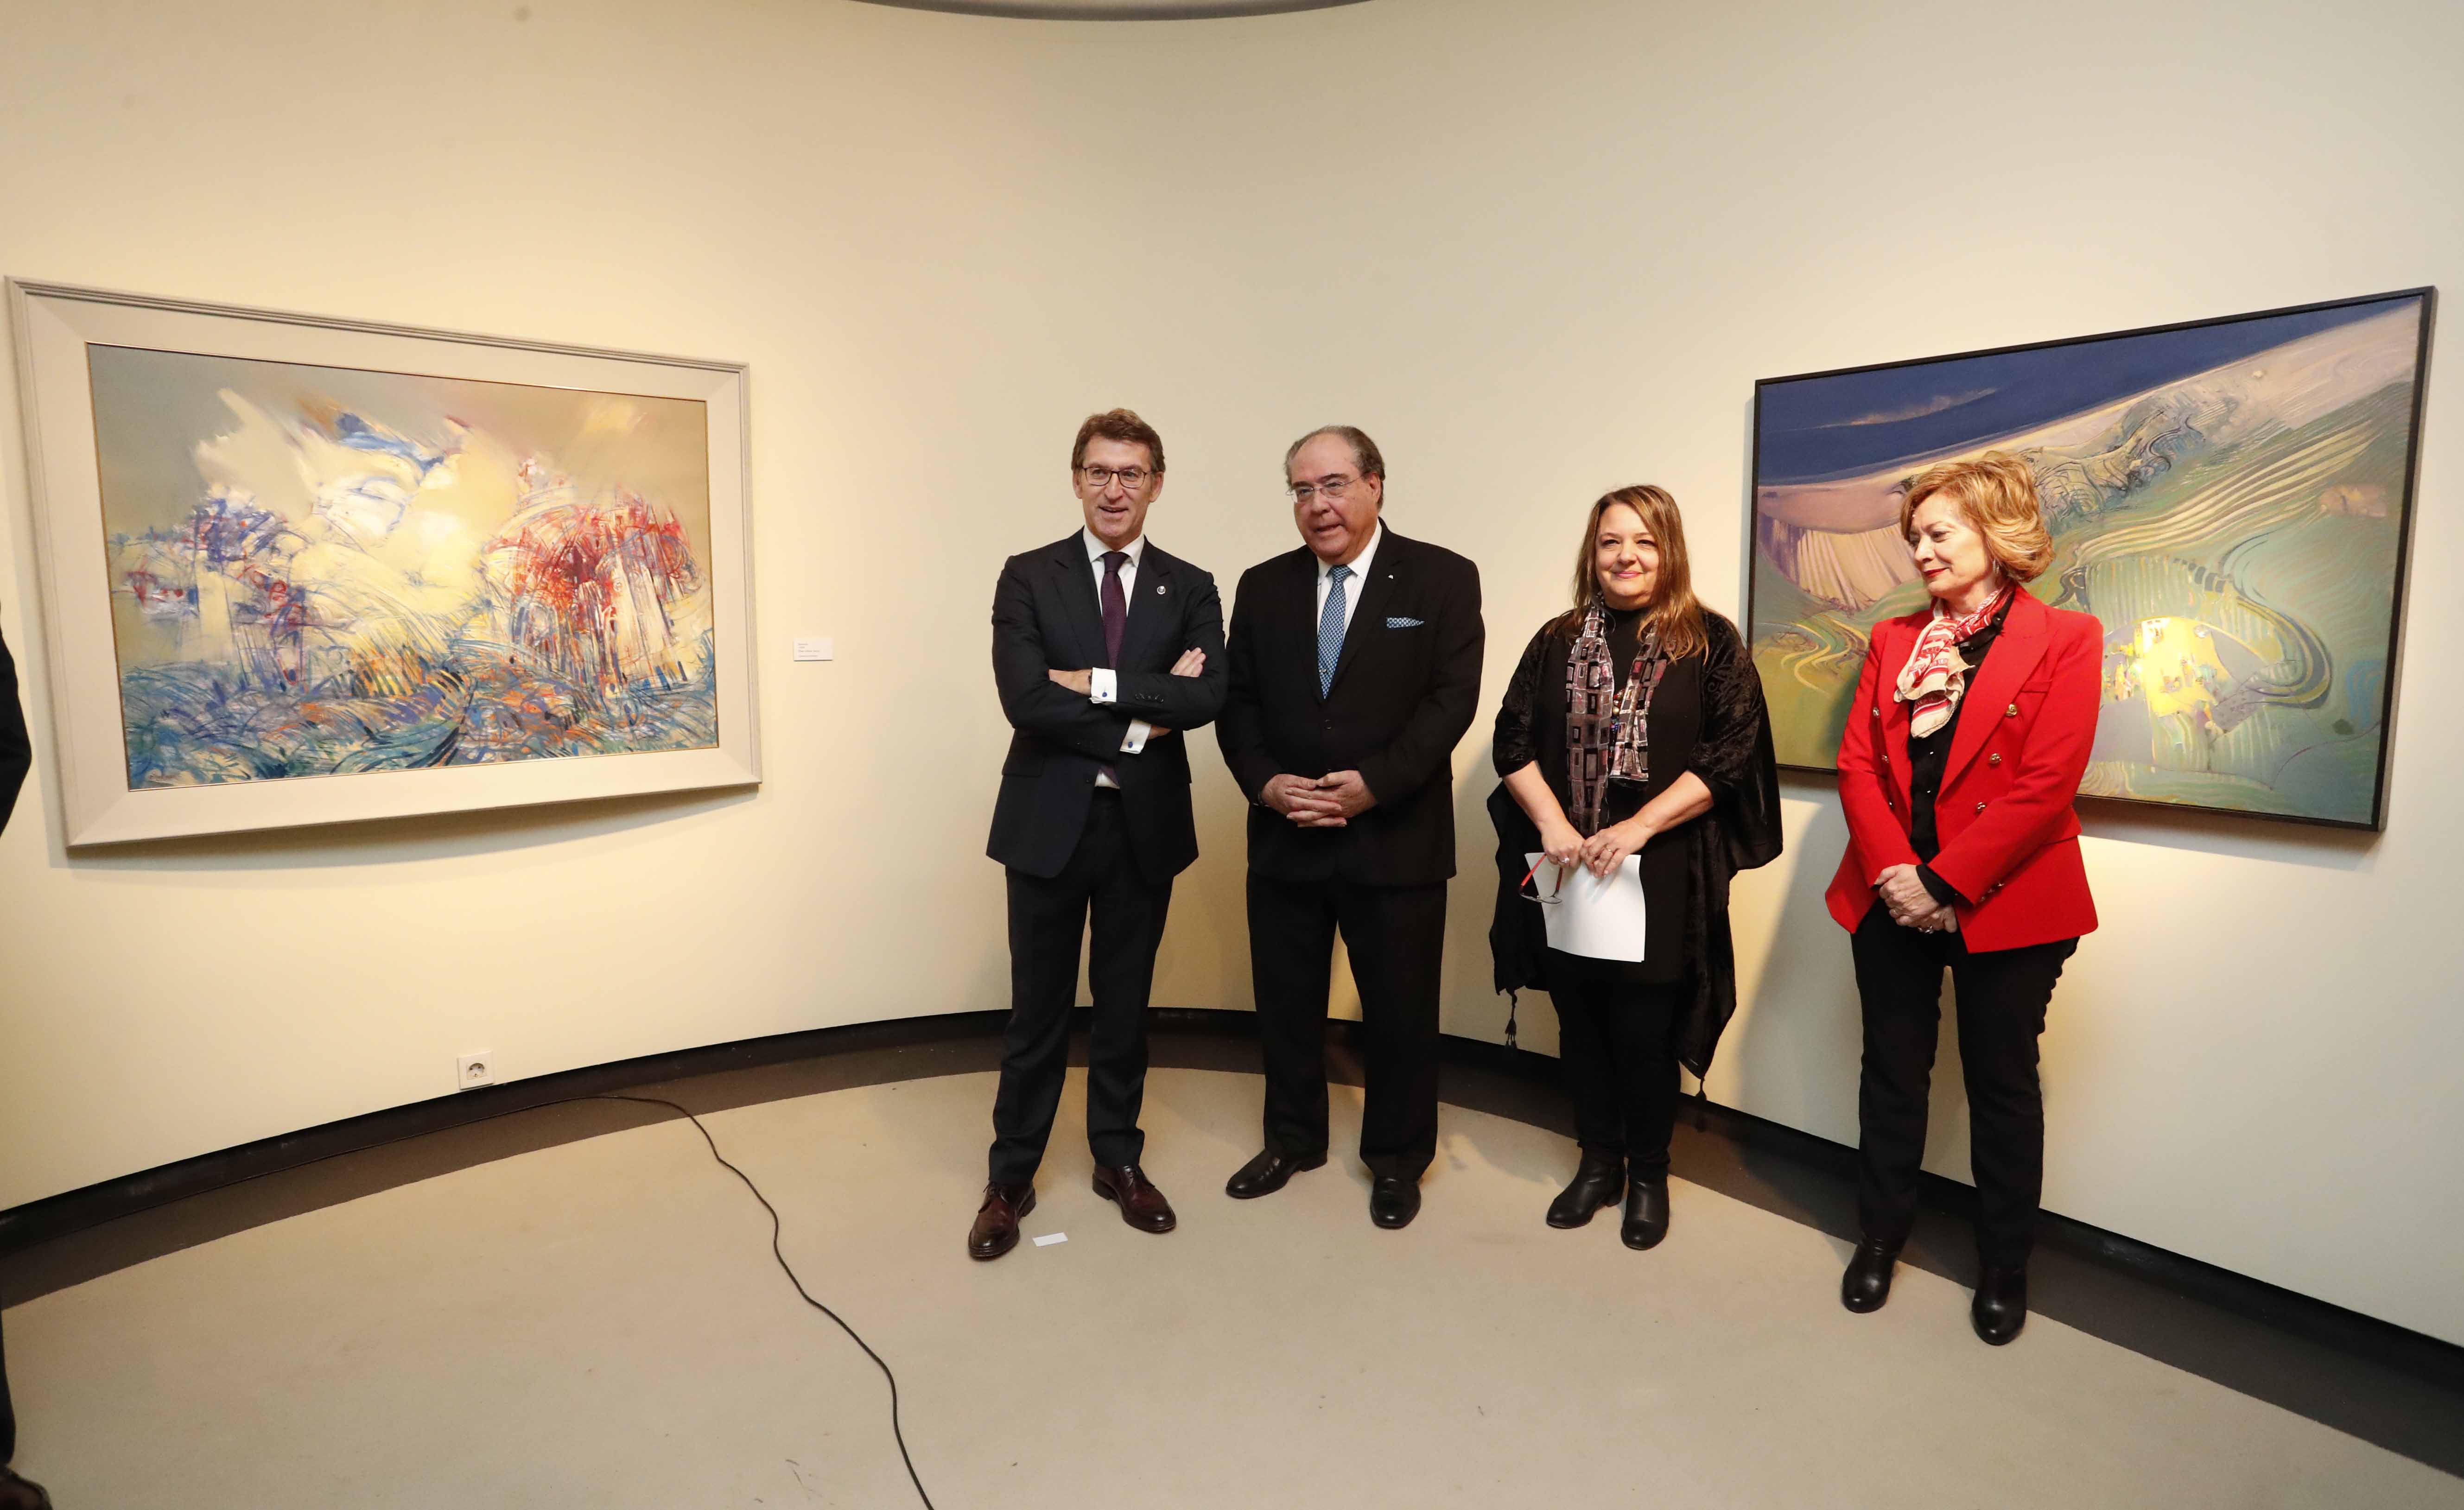 O presidente do Parlamento de Galicia, Miguel Ángel Santalices, asistiu á inauguración da exposición “Antonio Quesada. Dende o sentimento” no Teatro Afundación en Vigo.